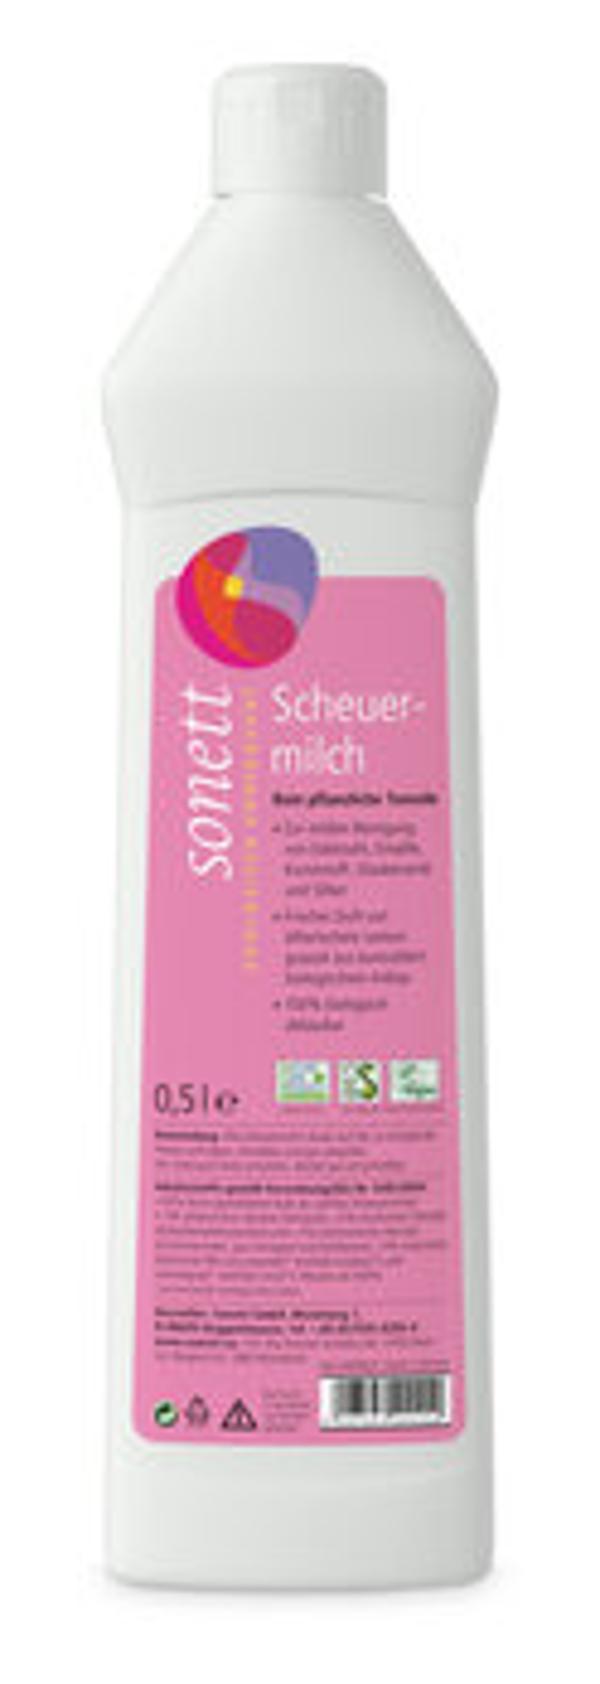 Produktfoto zu Scheuermilch; 500 ml